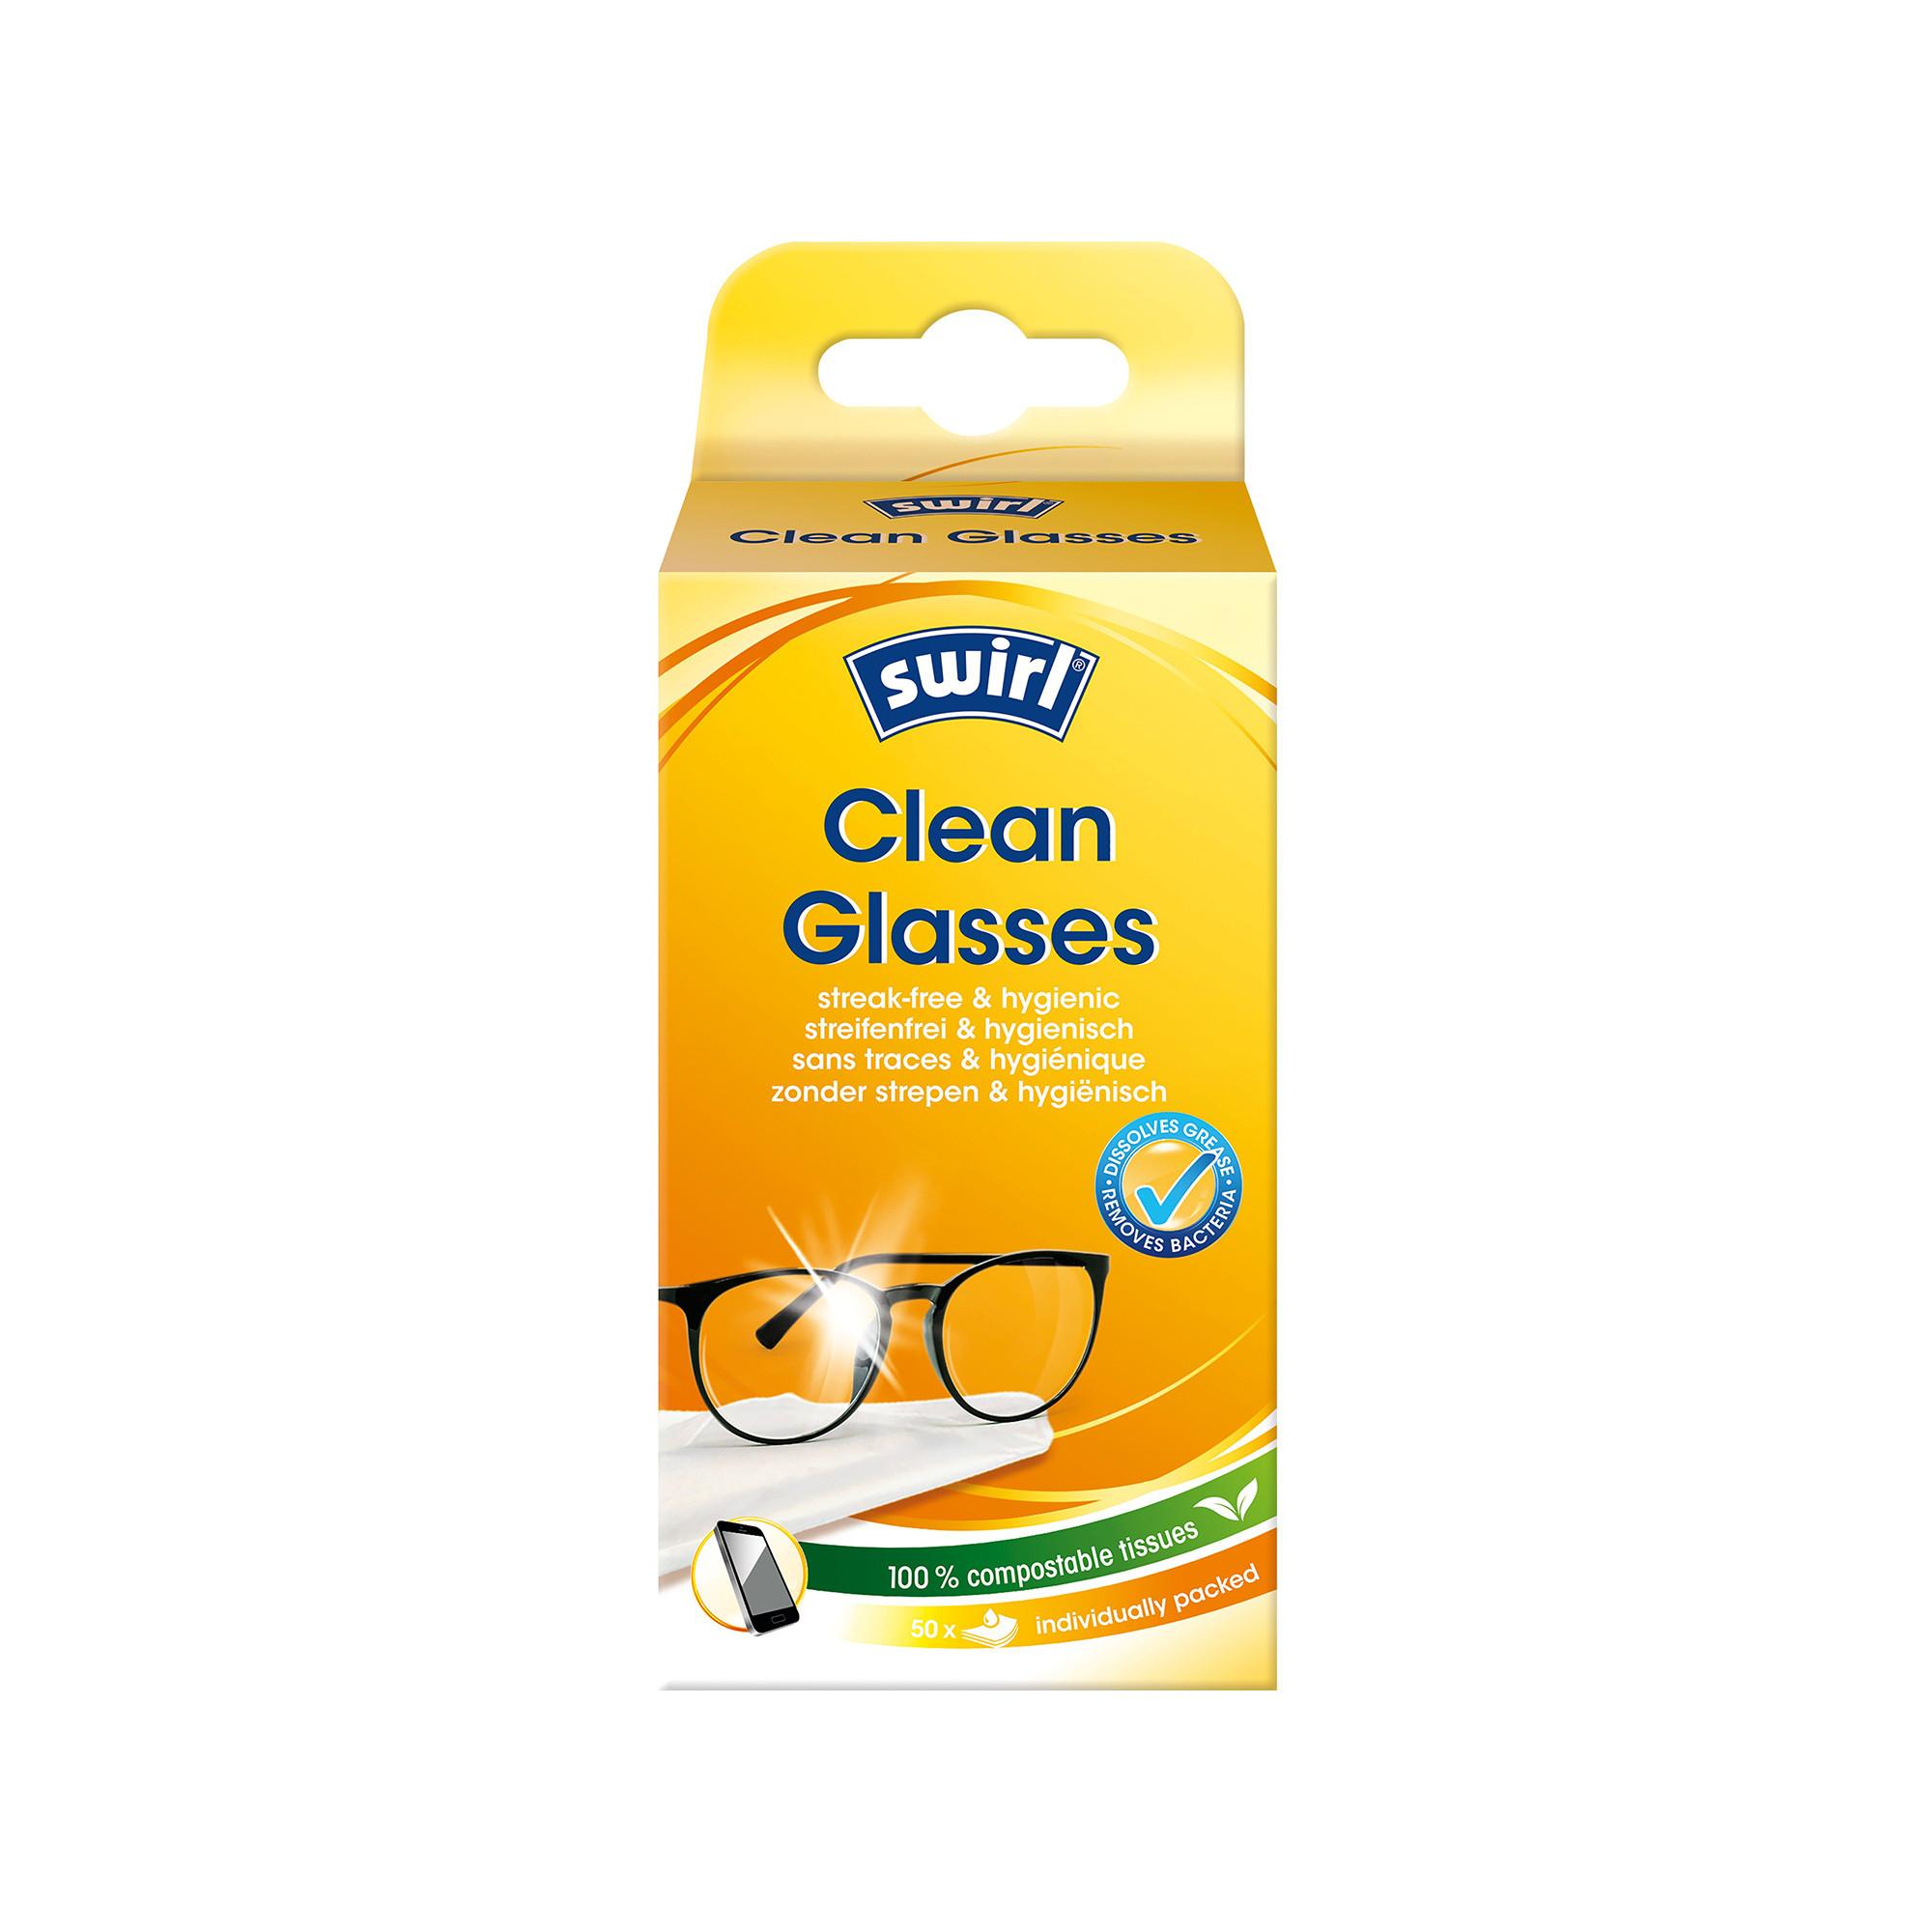 swirl Lingettes nettoyantes pour lunettes